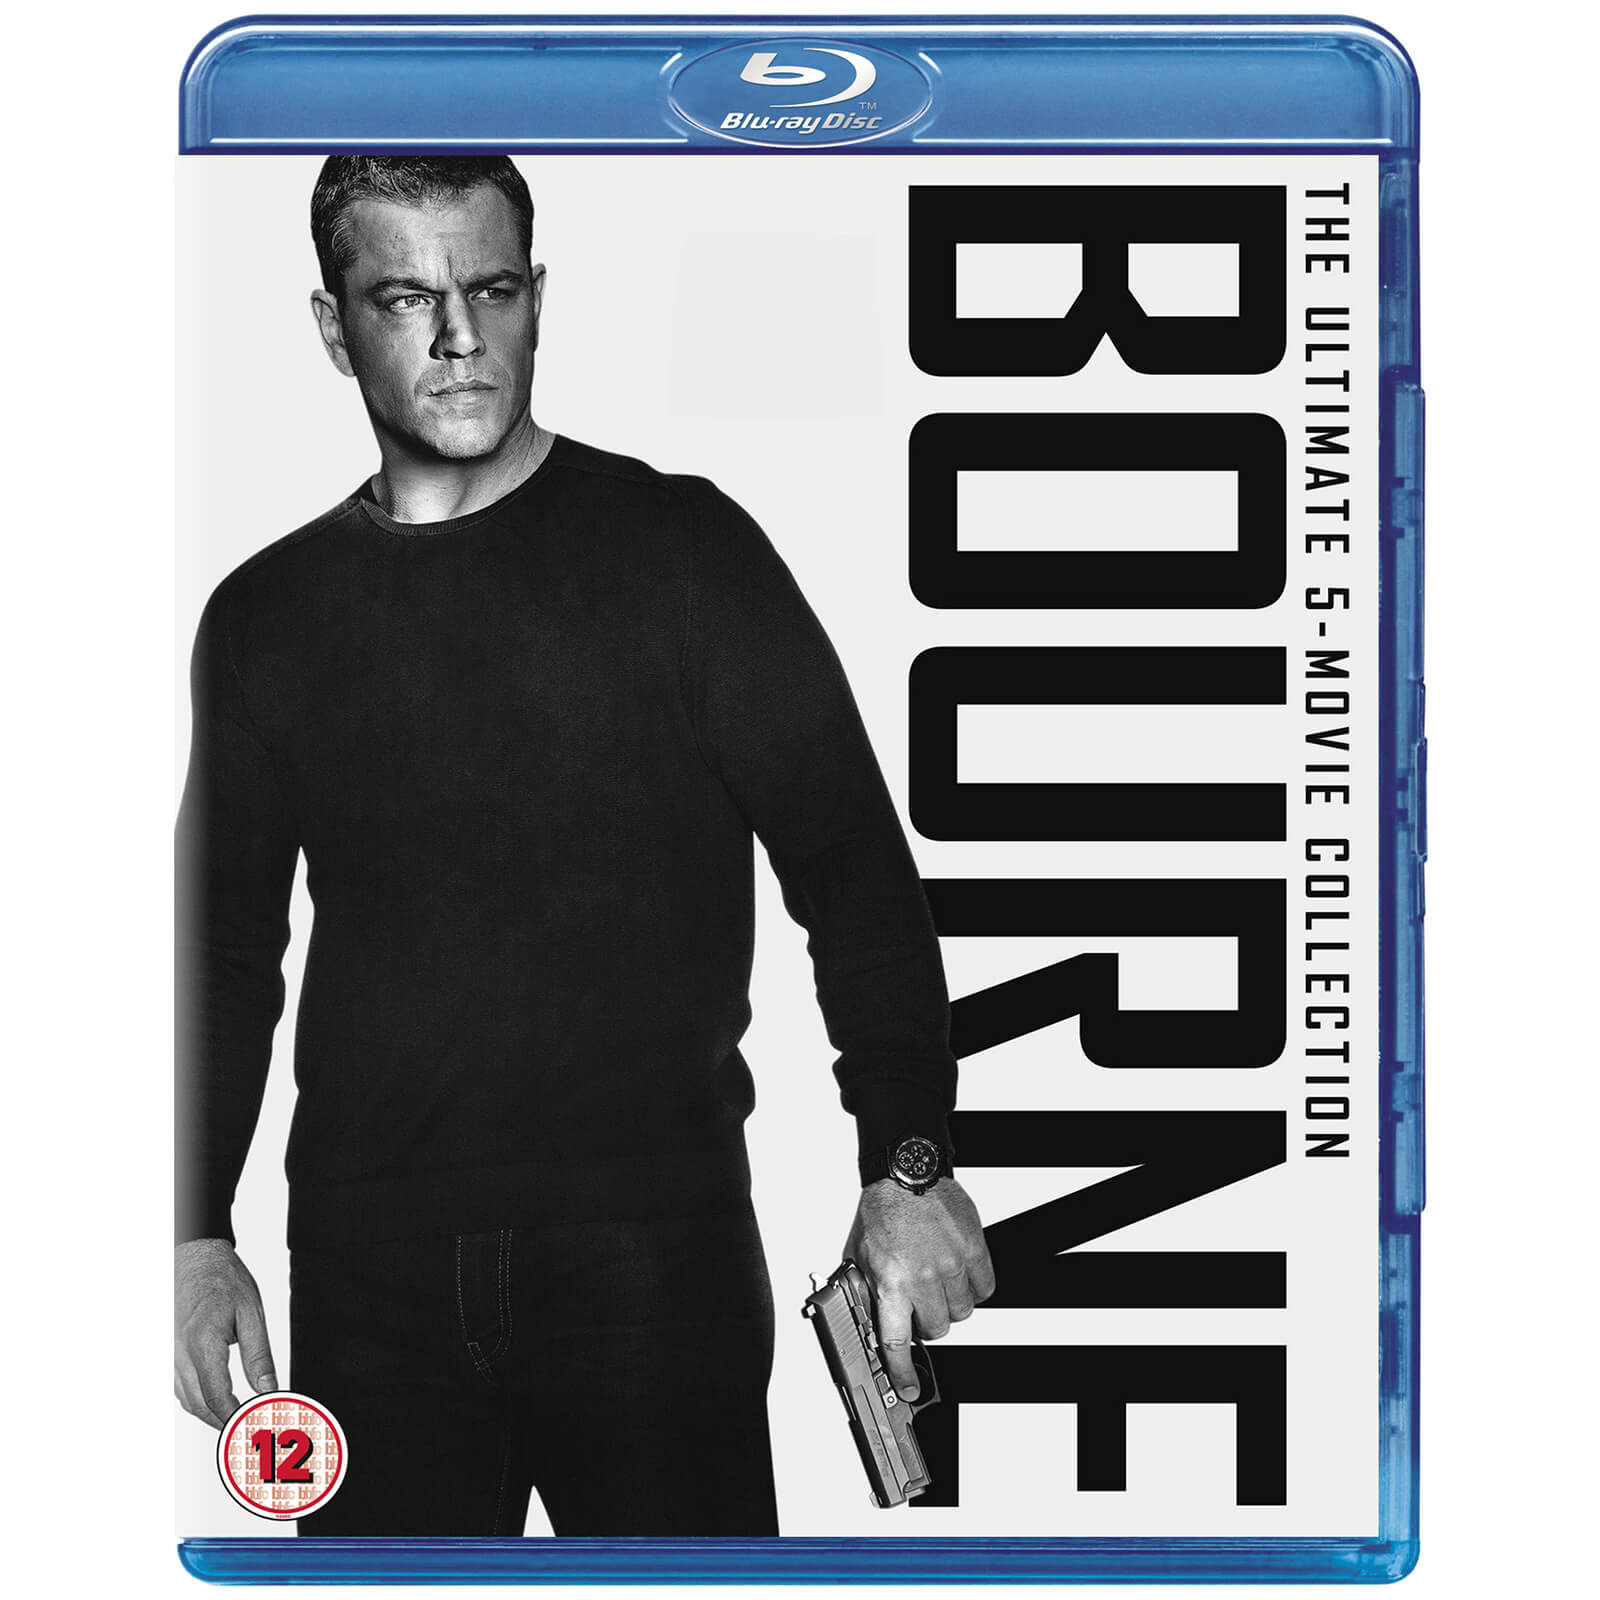 Die Bourne-Sammlung von Universal Pictures